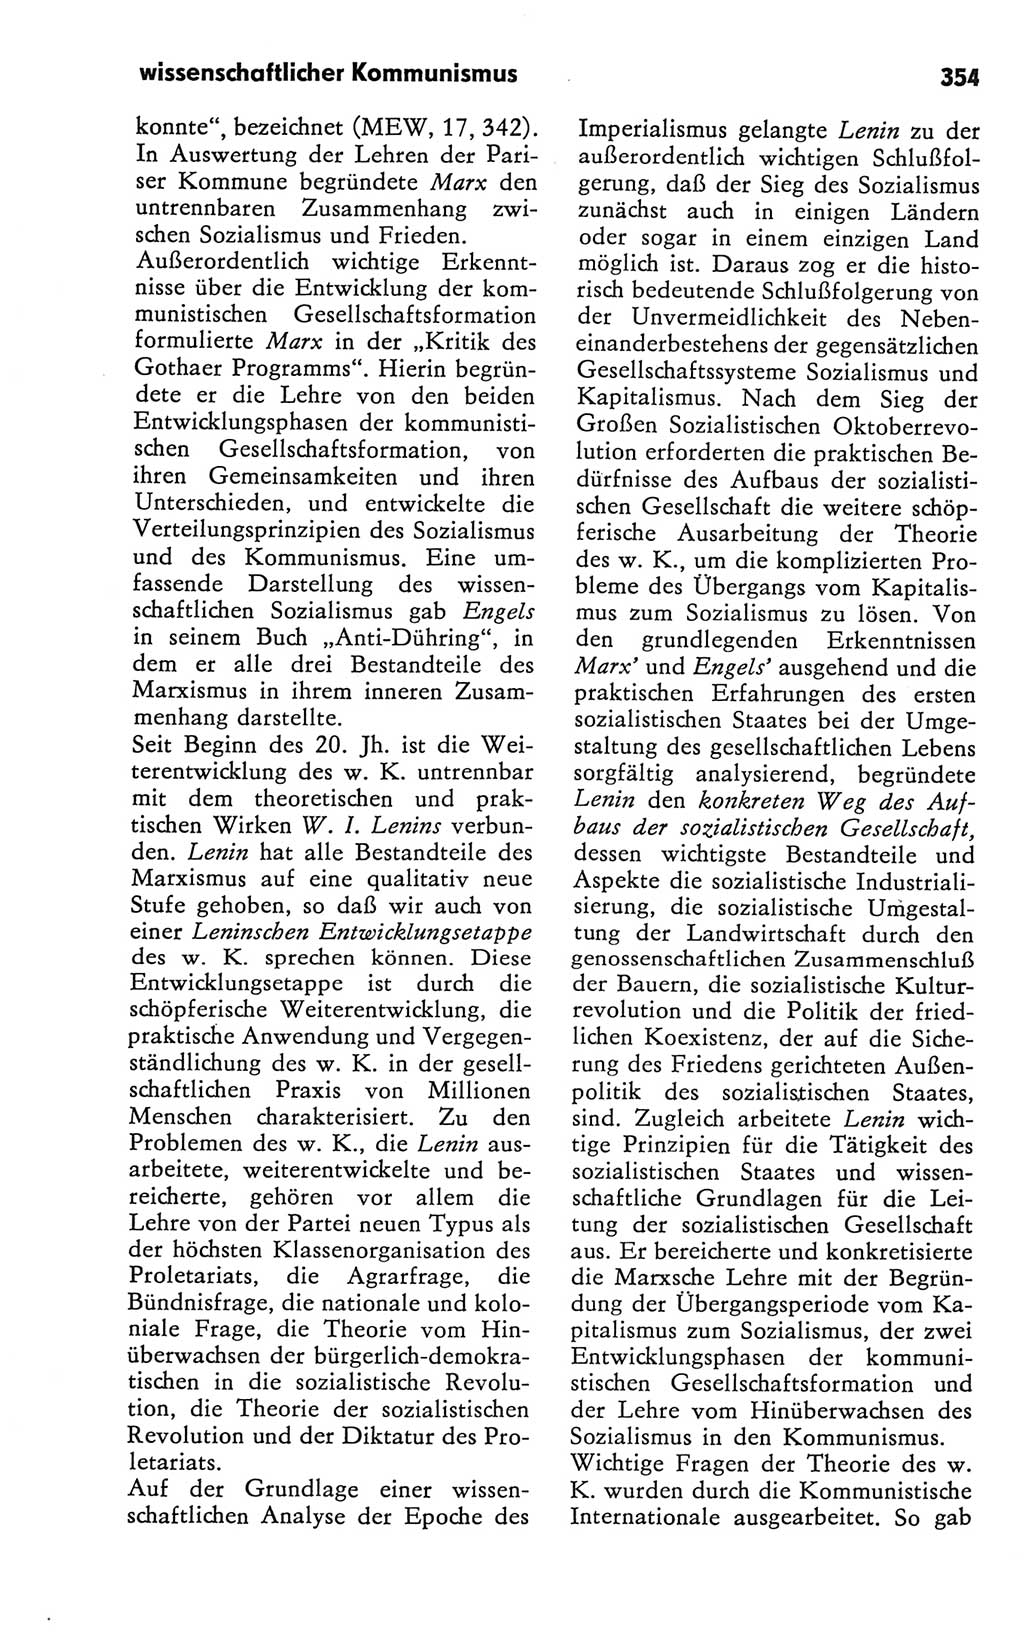 Kleines Wörterbuch der marxistisch-leninistischen Philosophie [Deutsche Demokratische Republik (DDR)] 1981, Seite 354 (Kl. Wb. ML Phil. DDR 1981, S. 354)